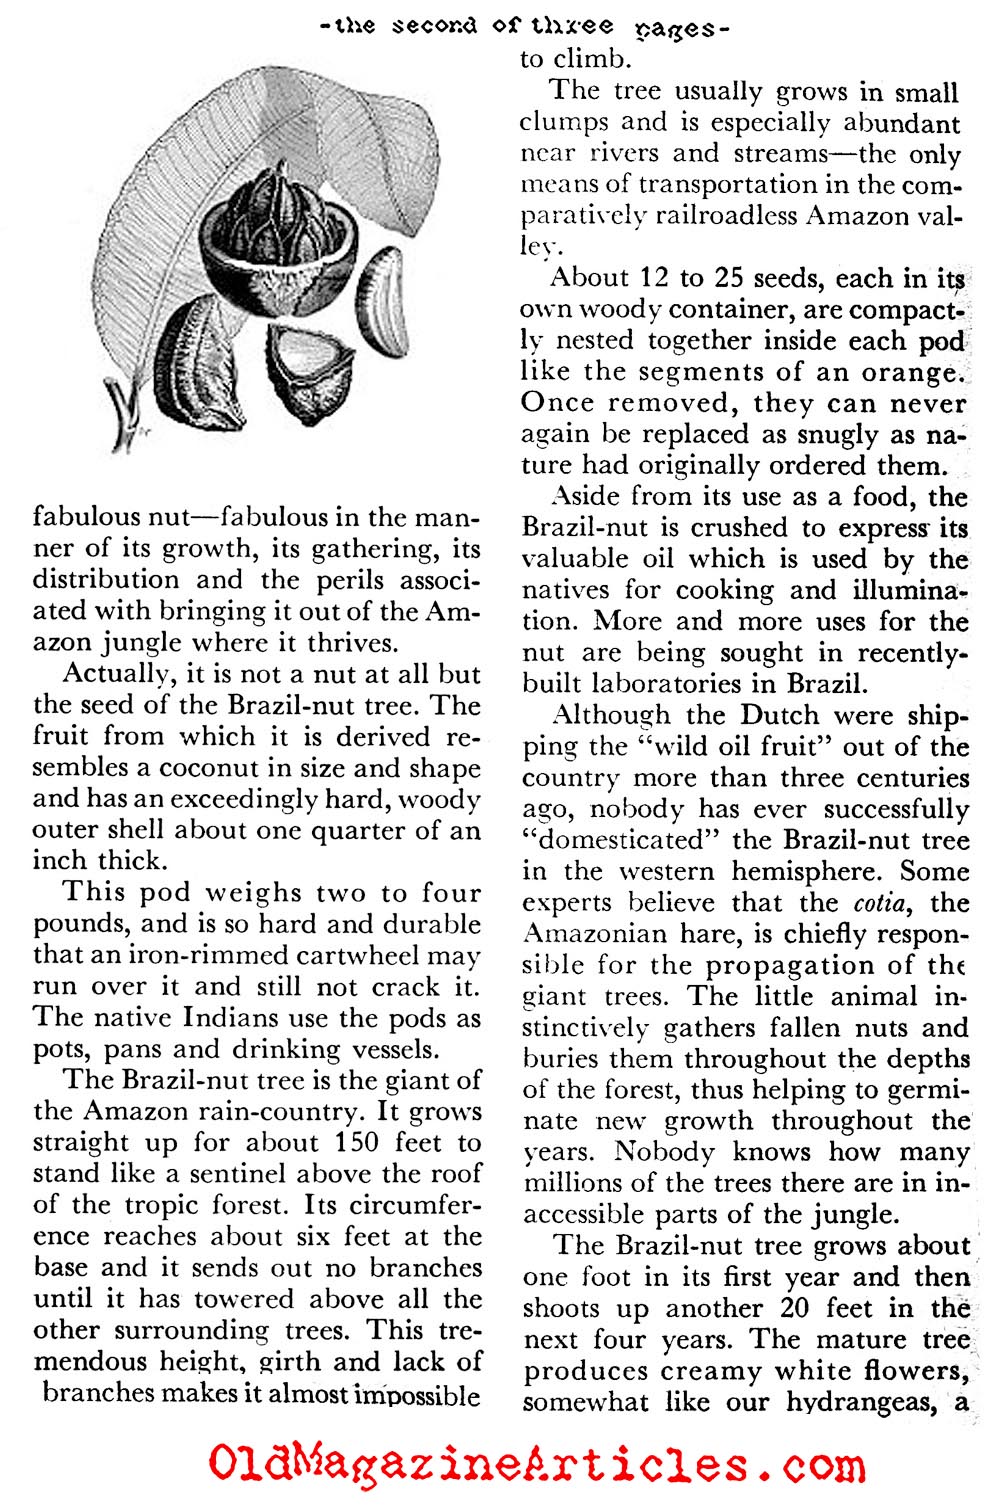 The Fabulous Brazil Nuts (Coronet Magazine, 1956)